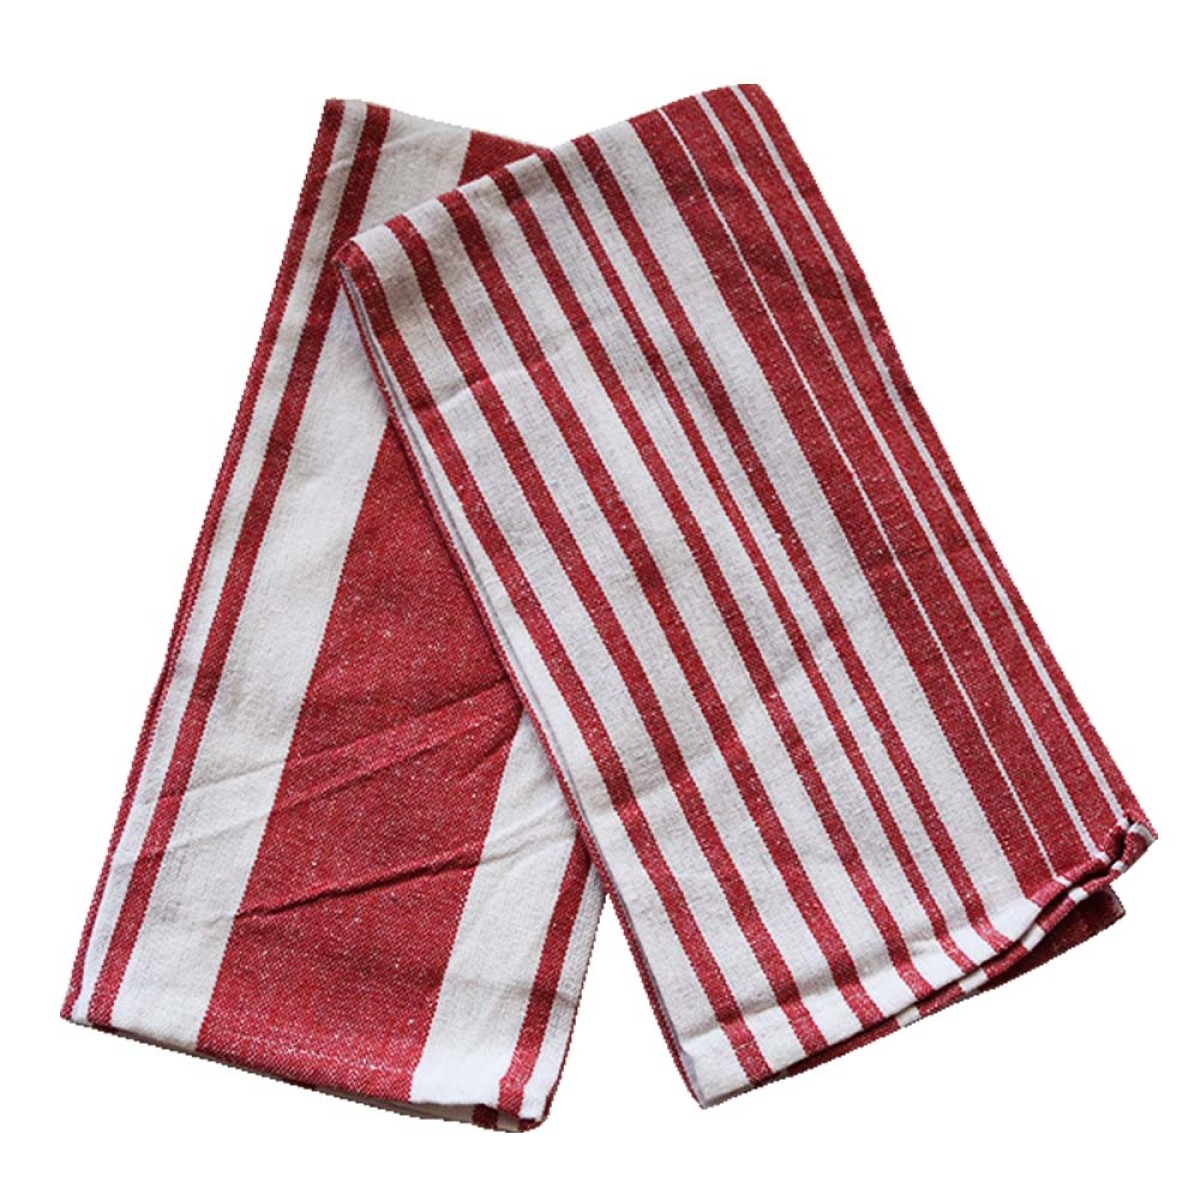 Σετ 2 Πετσέτες Κουζίνας 40x60cm βαμβάκι & πολυεστέρας λευκό & κόκκινο χρώμα TNS 39-958-0432